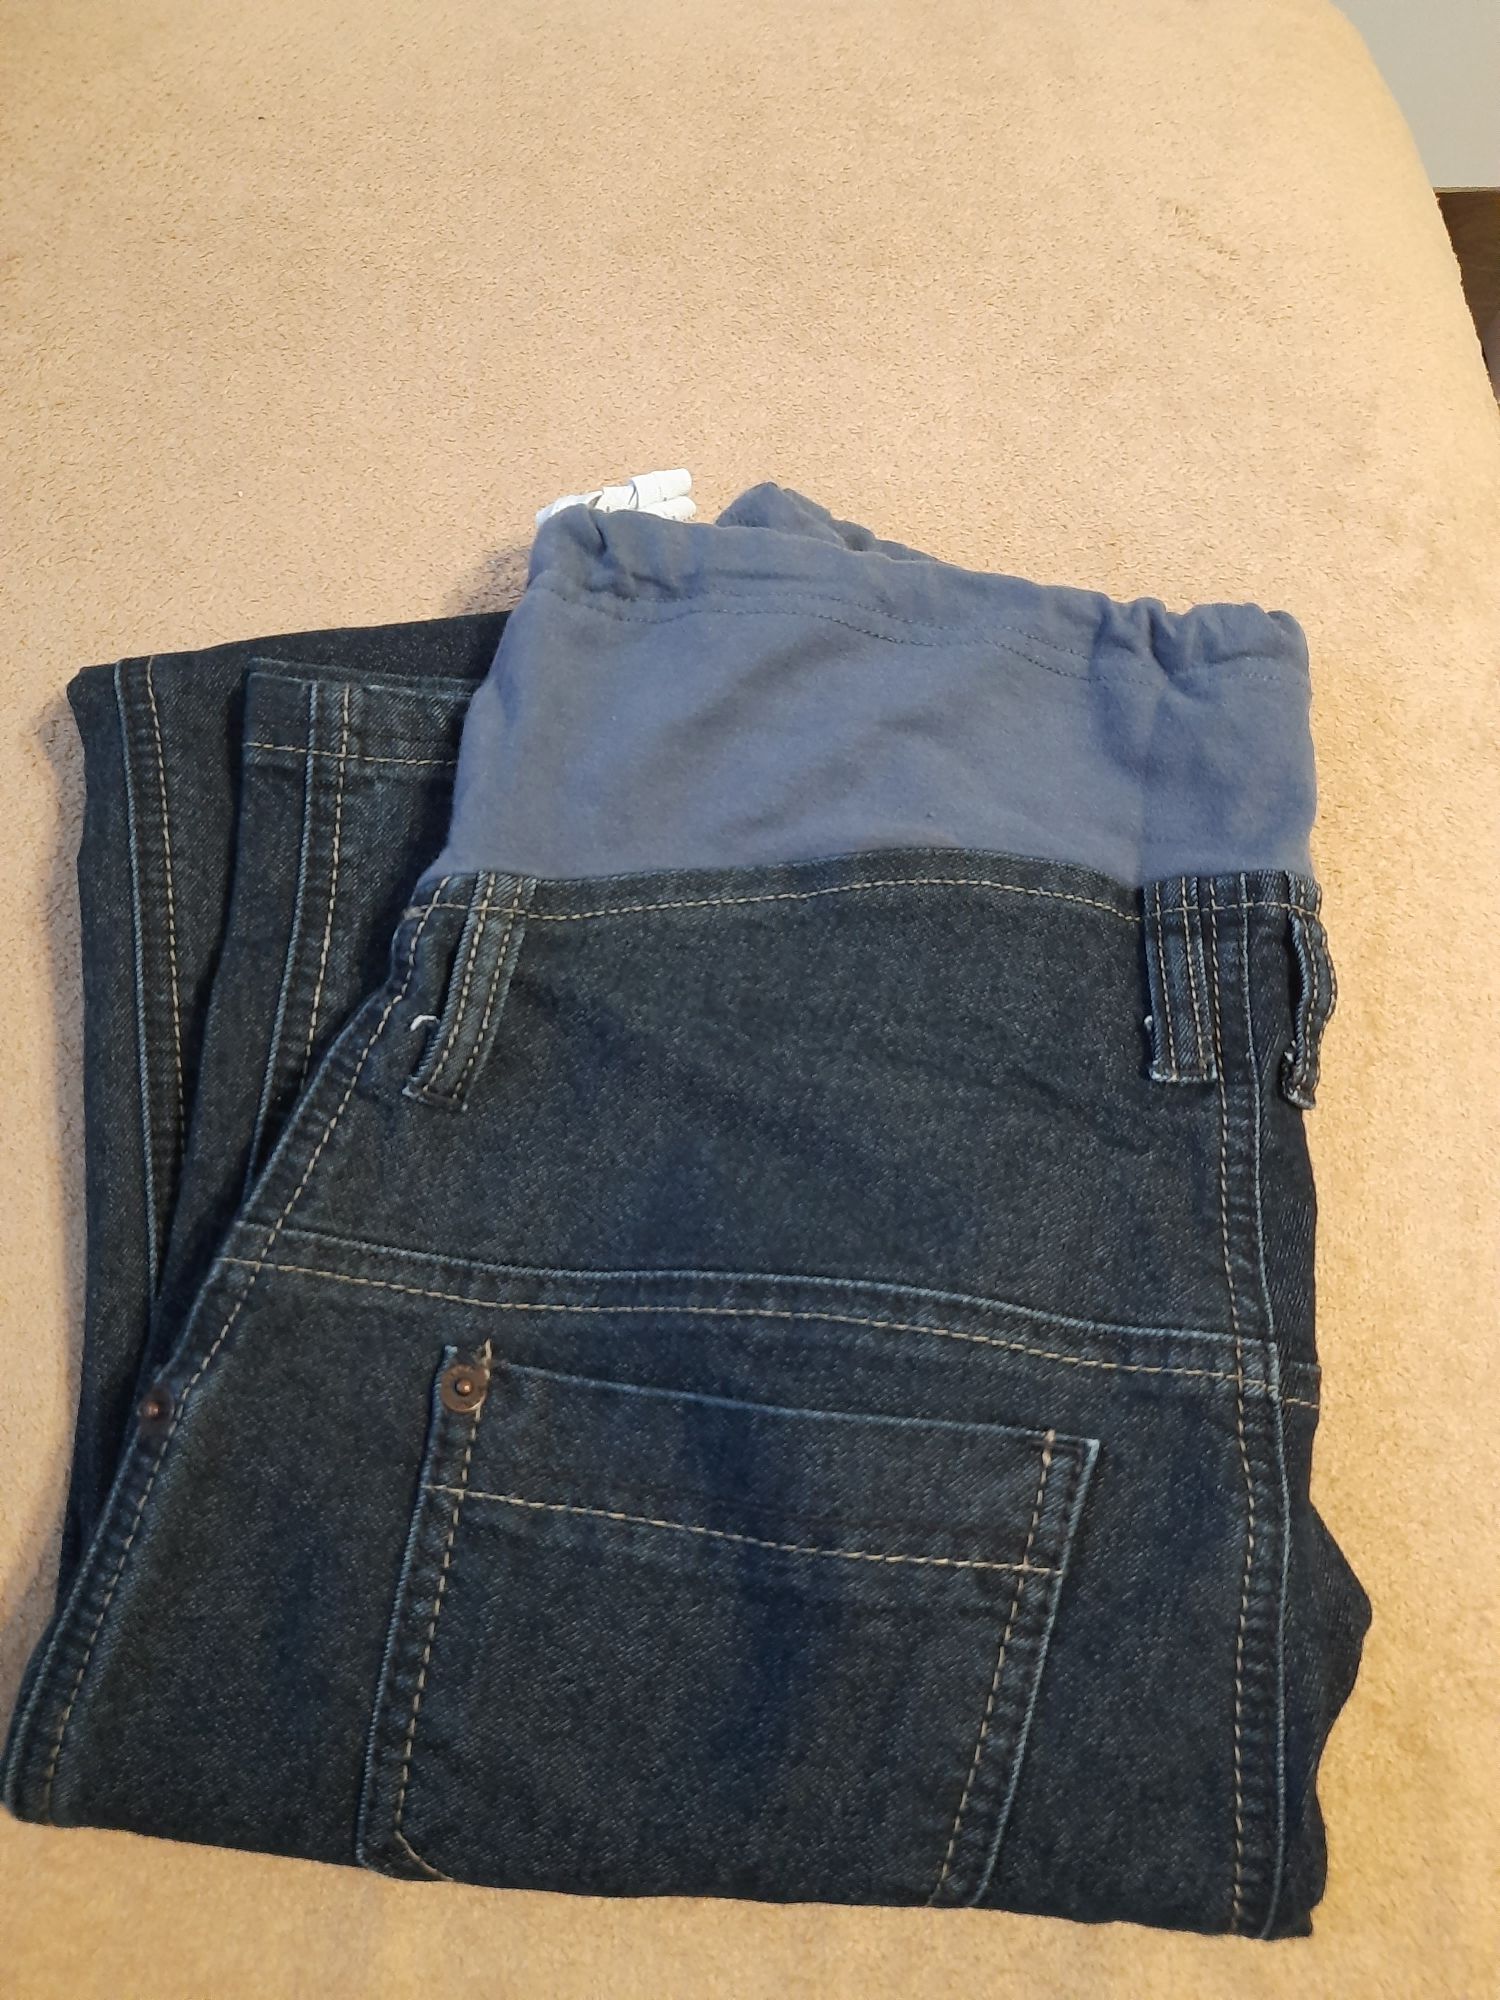 Spodnie jeansowe ciążowe BRANCO, jak nowe, roz. L